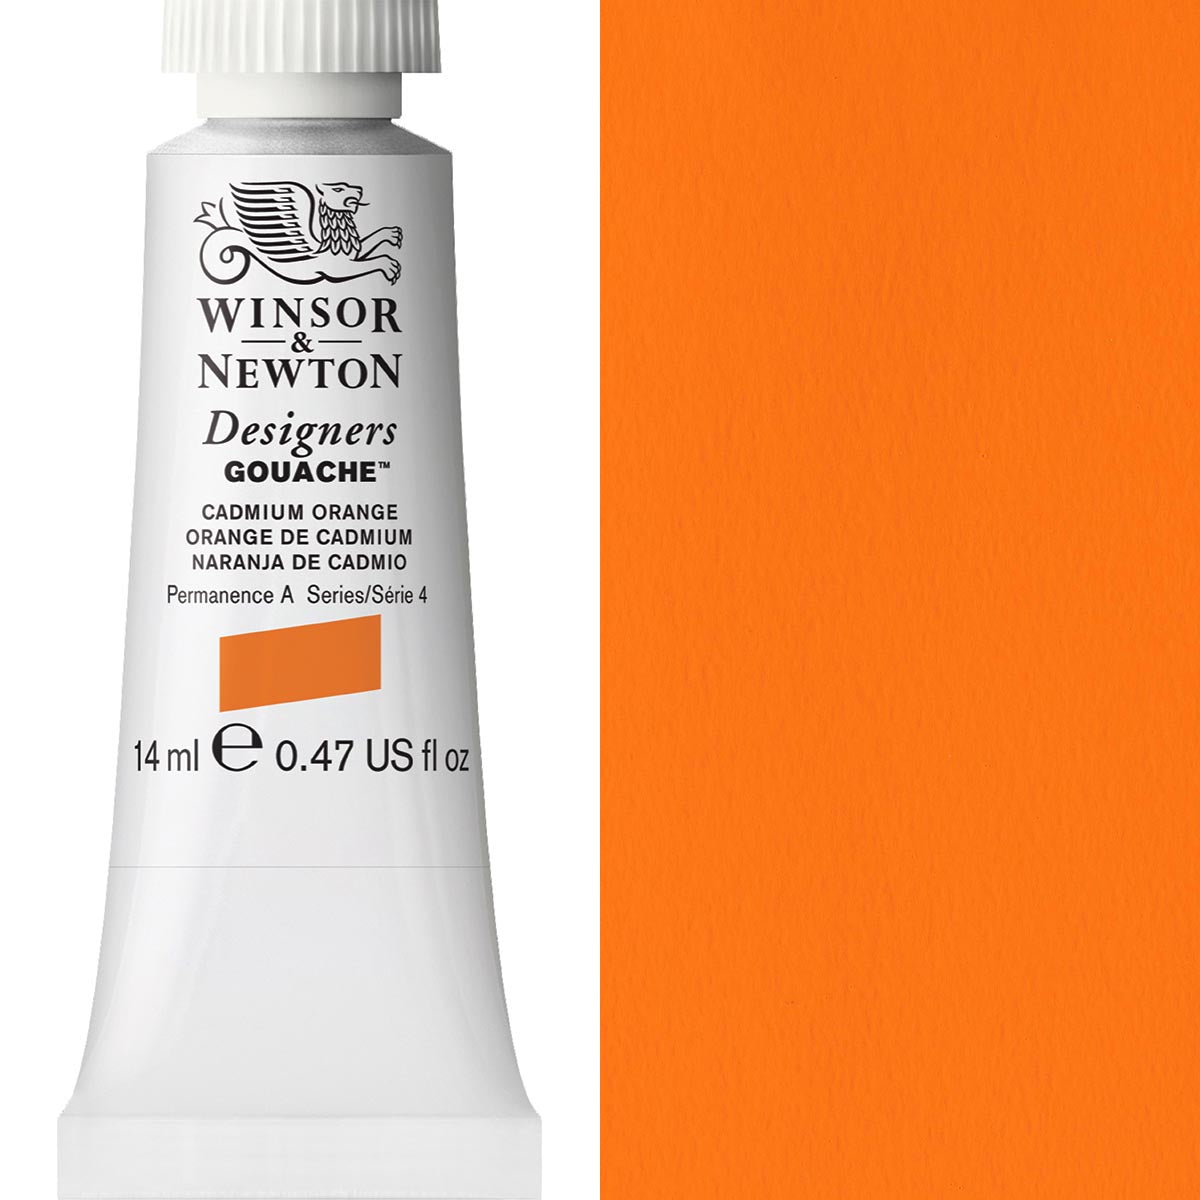 Winsor and Newton - Designers Gouache - 14ml - Cadmium Orange